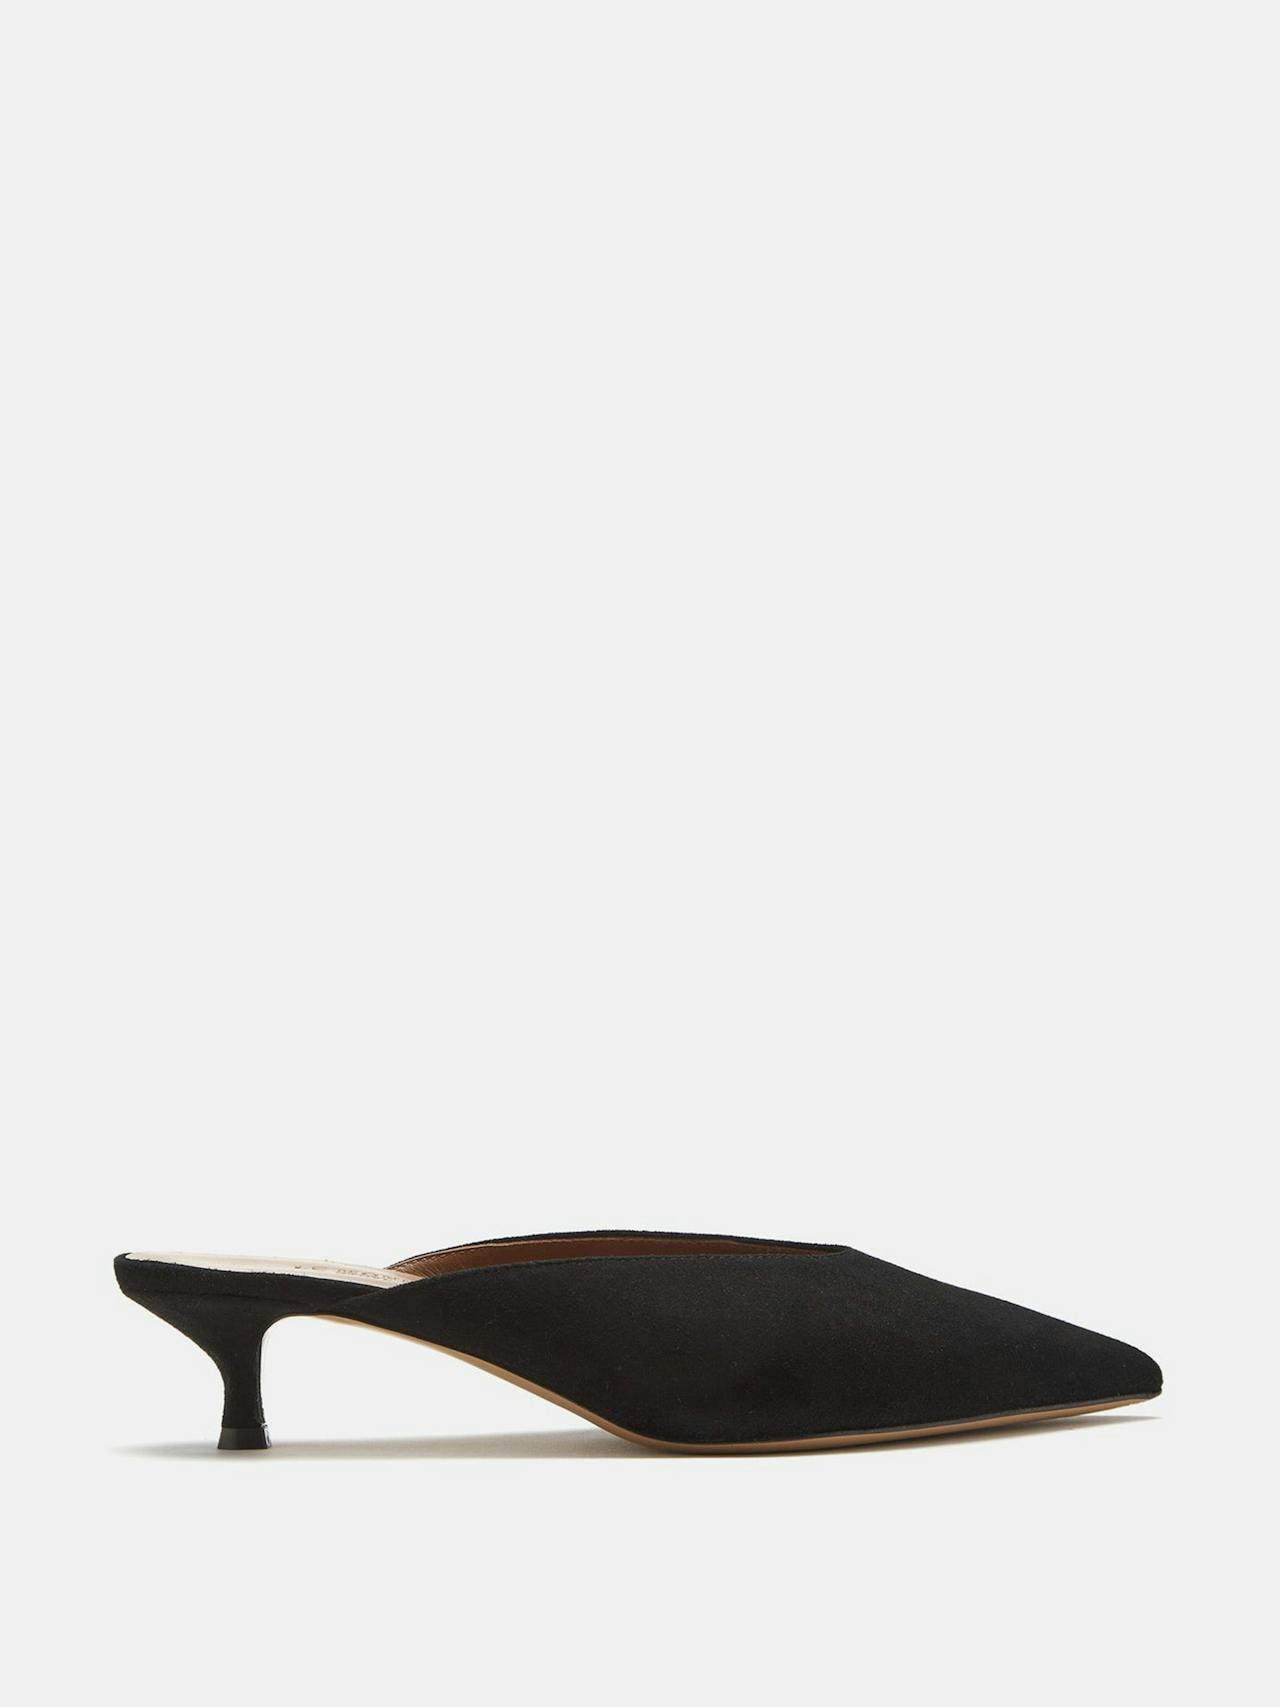 Black suede Venetian kitten heels